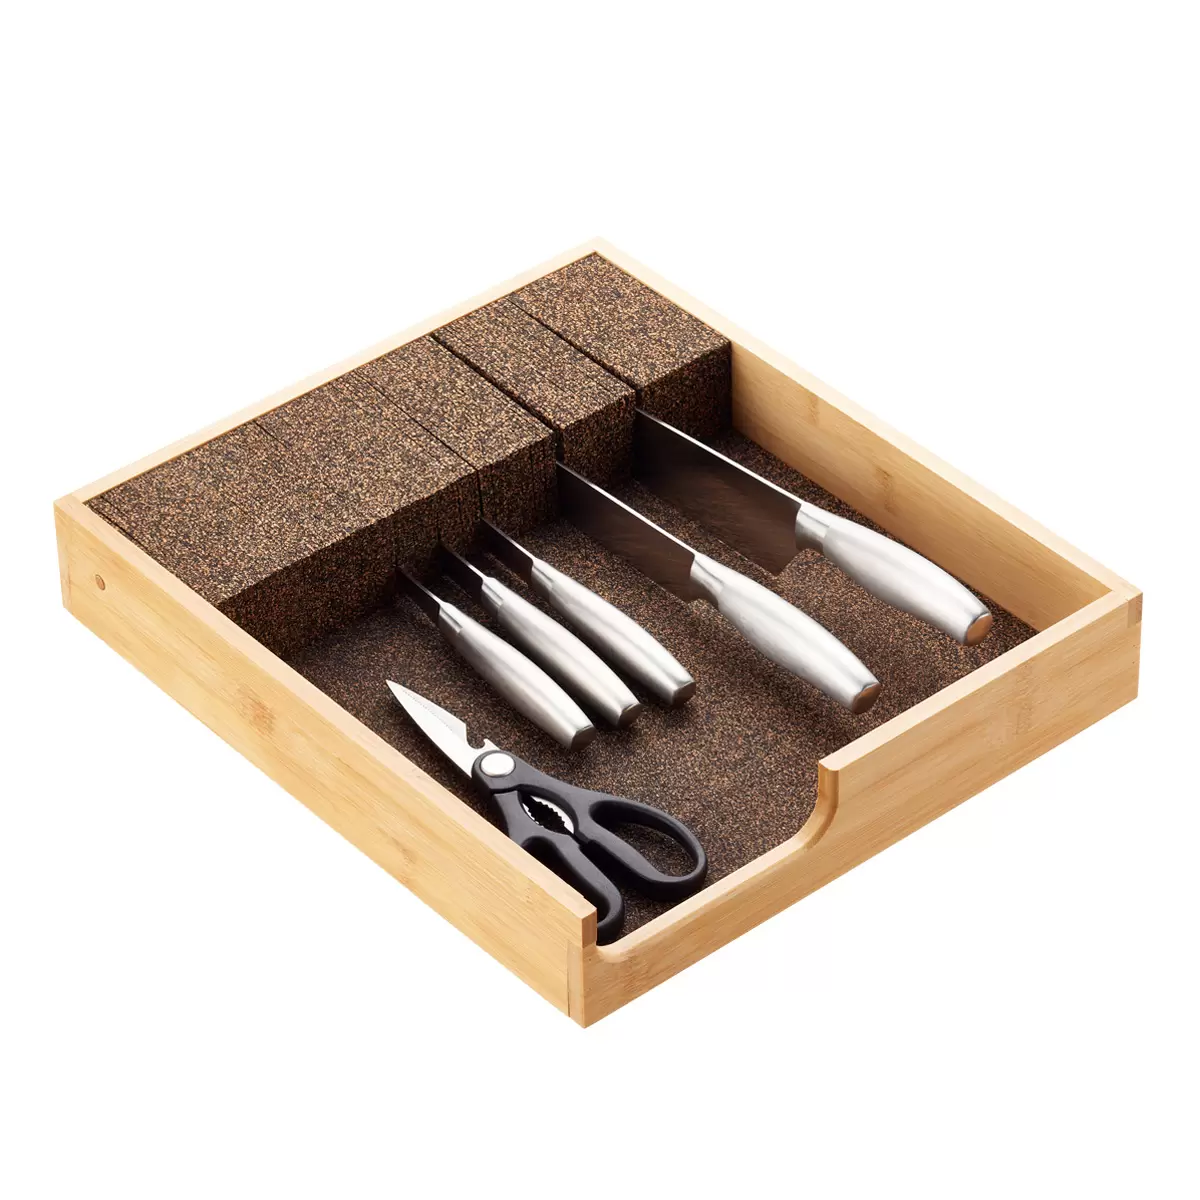 Coninx Stainless Steel Kitchen Knife Block - Modern Oval Kitchen